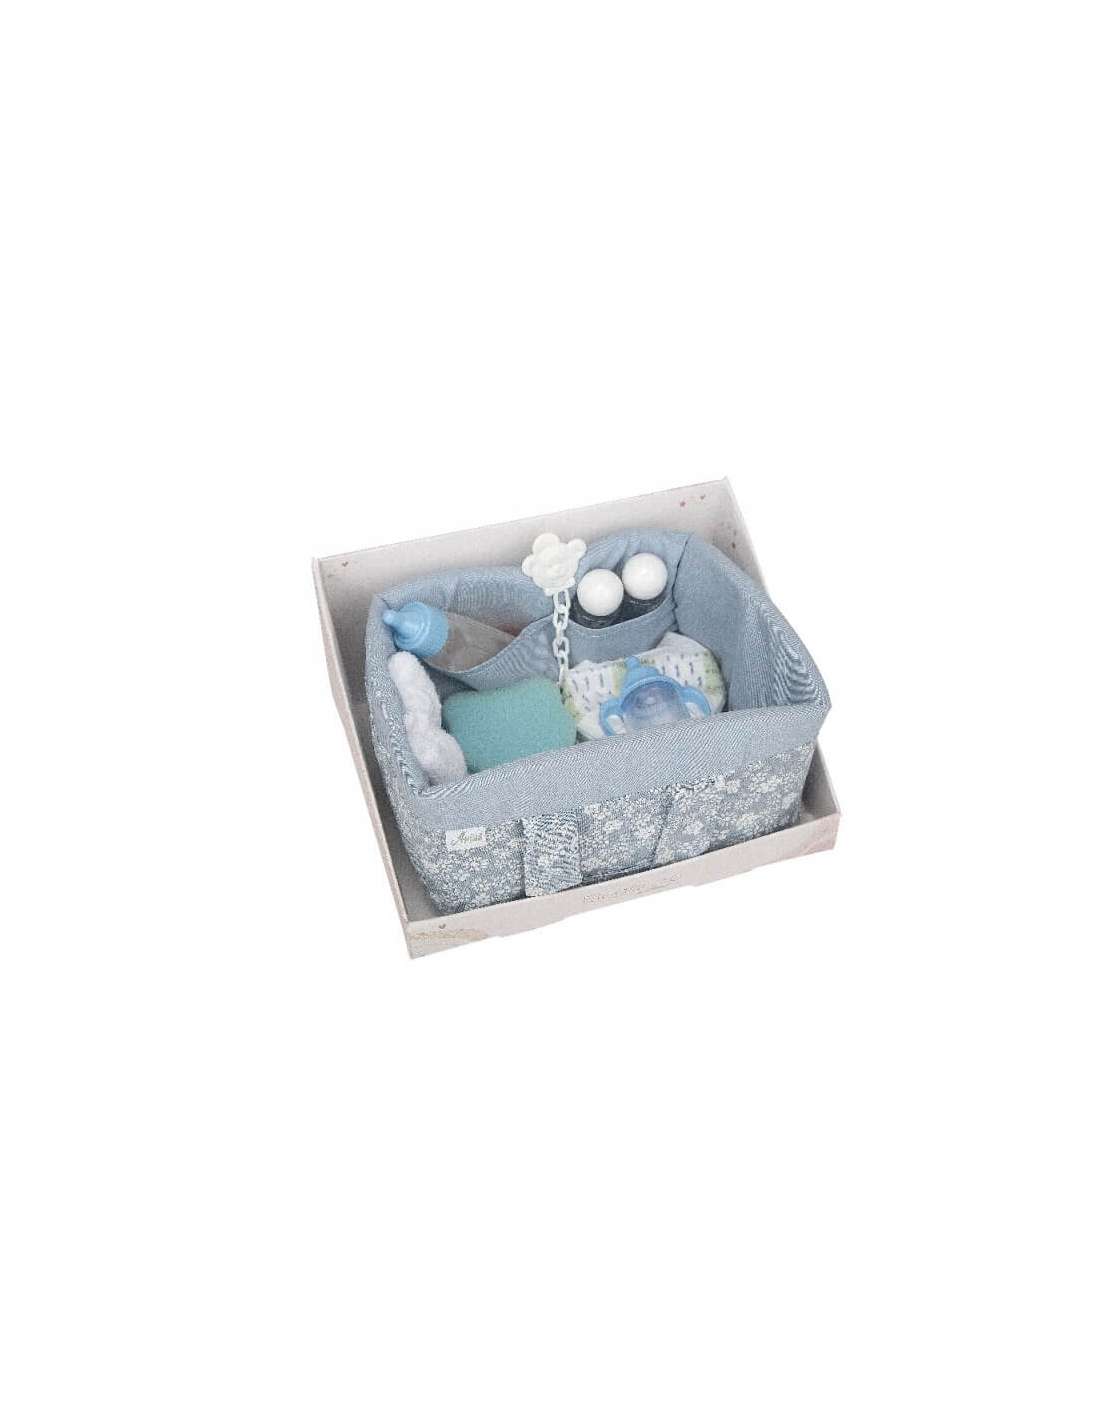 Canastilla de bebe caja redonda topitos azul - Farmacia Rufas